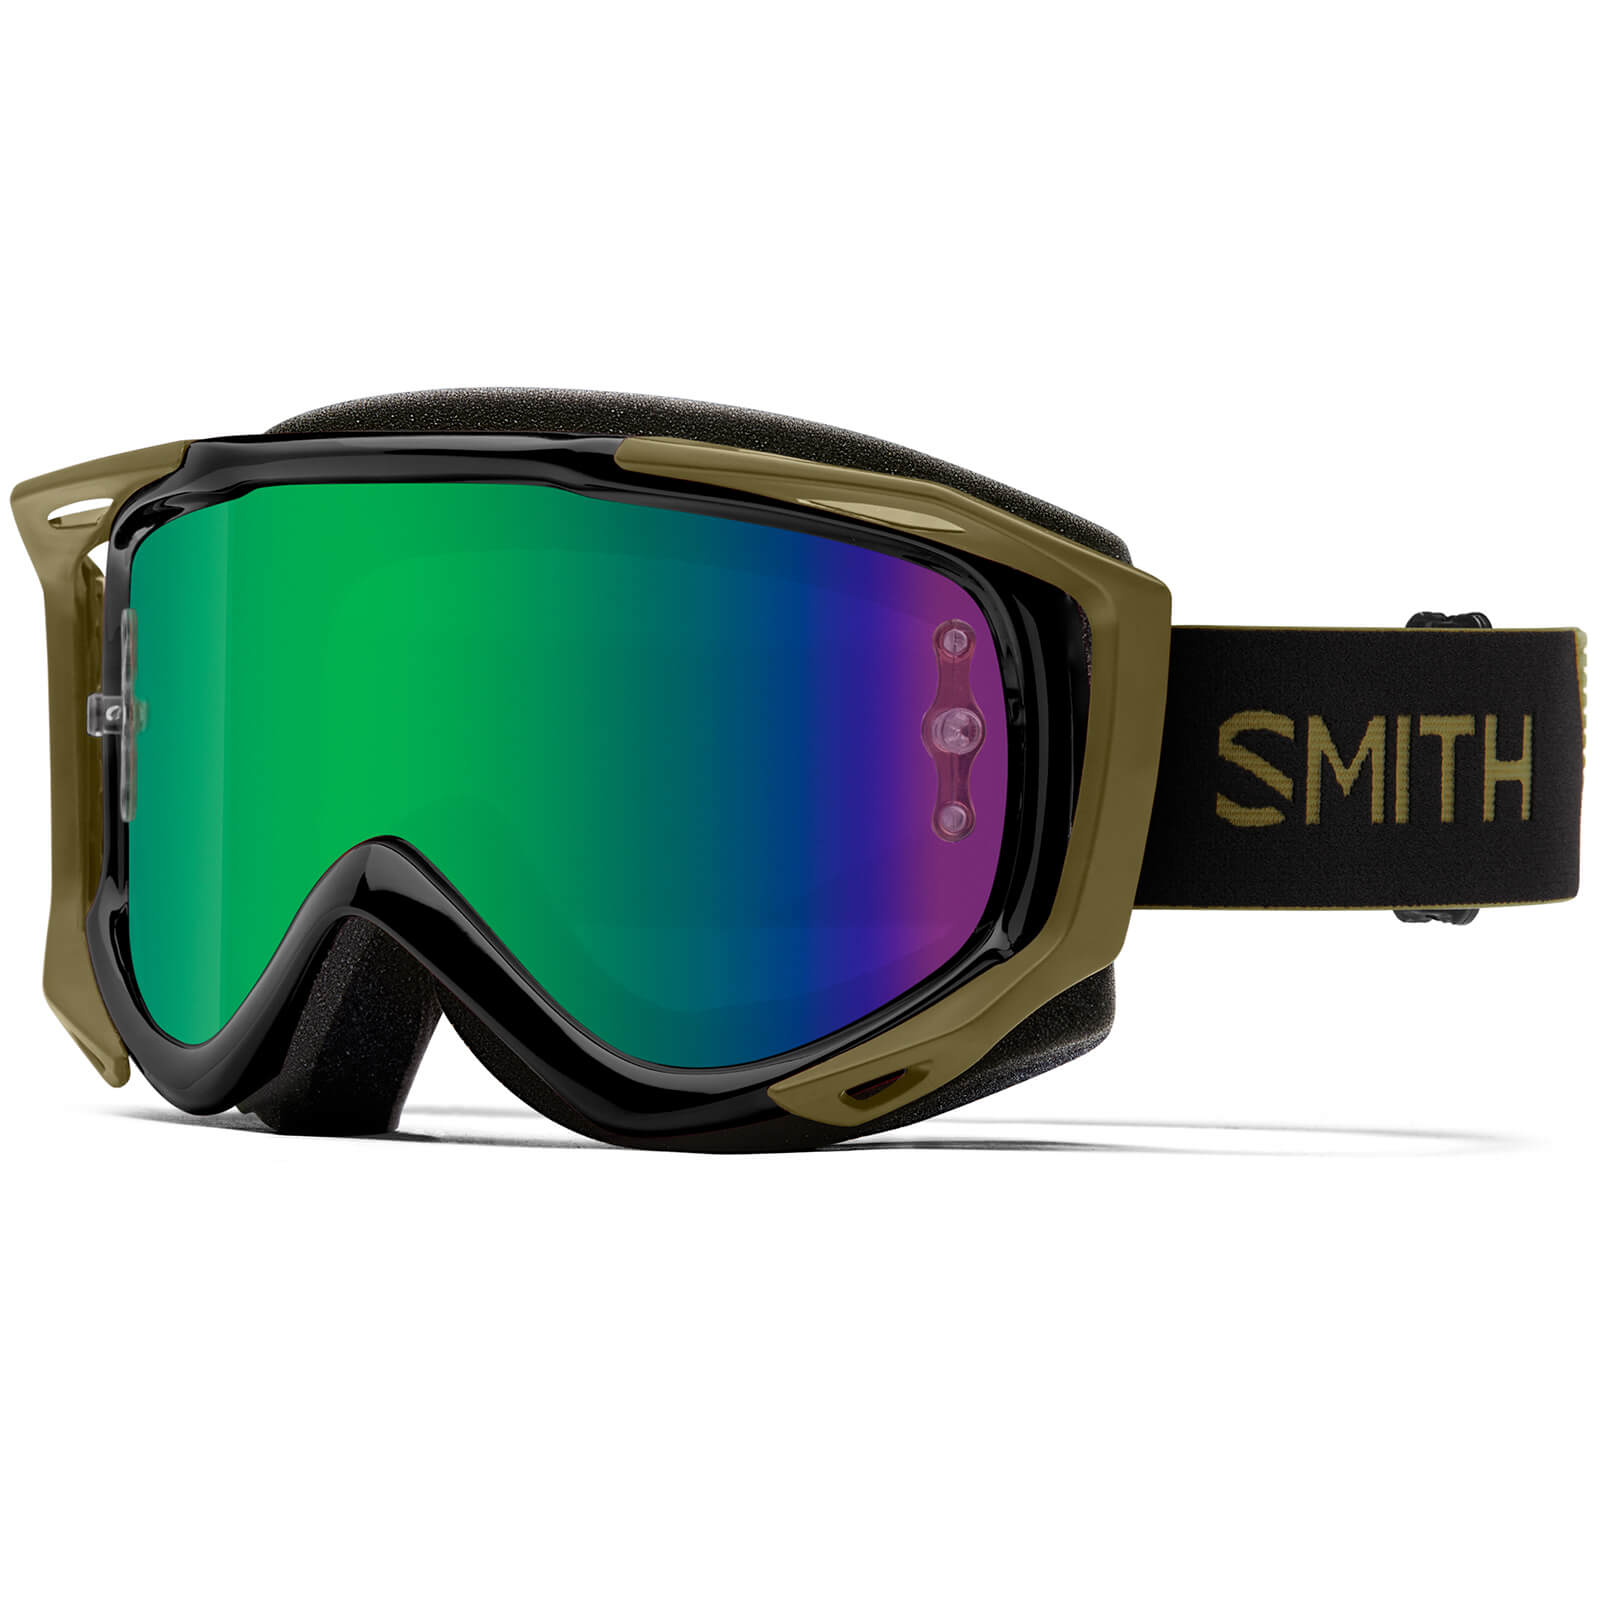 Smith Fuel V2 MTB Goggles - Green Mirror Lens - Mystic Green